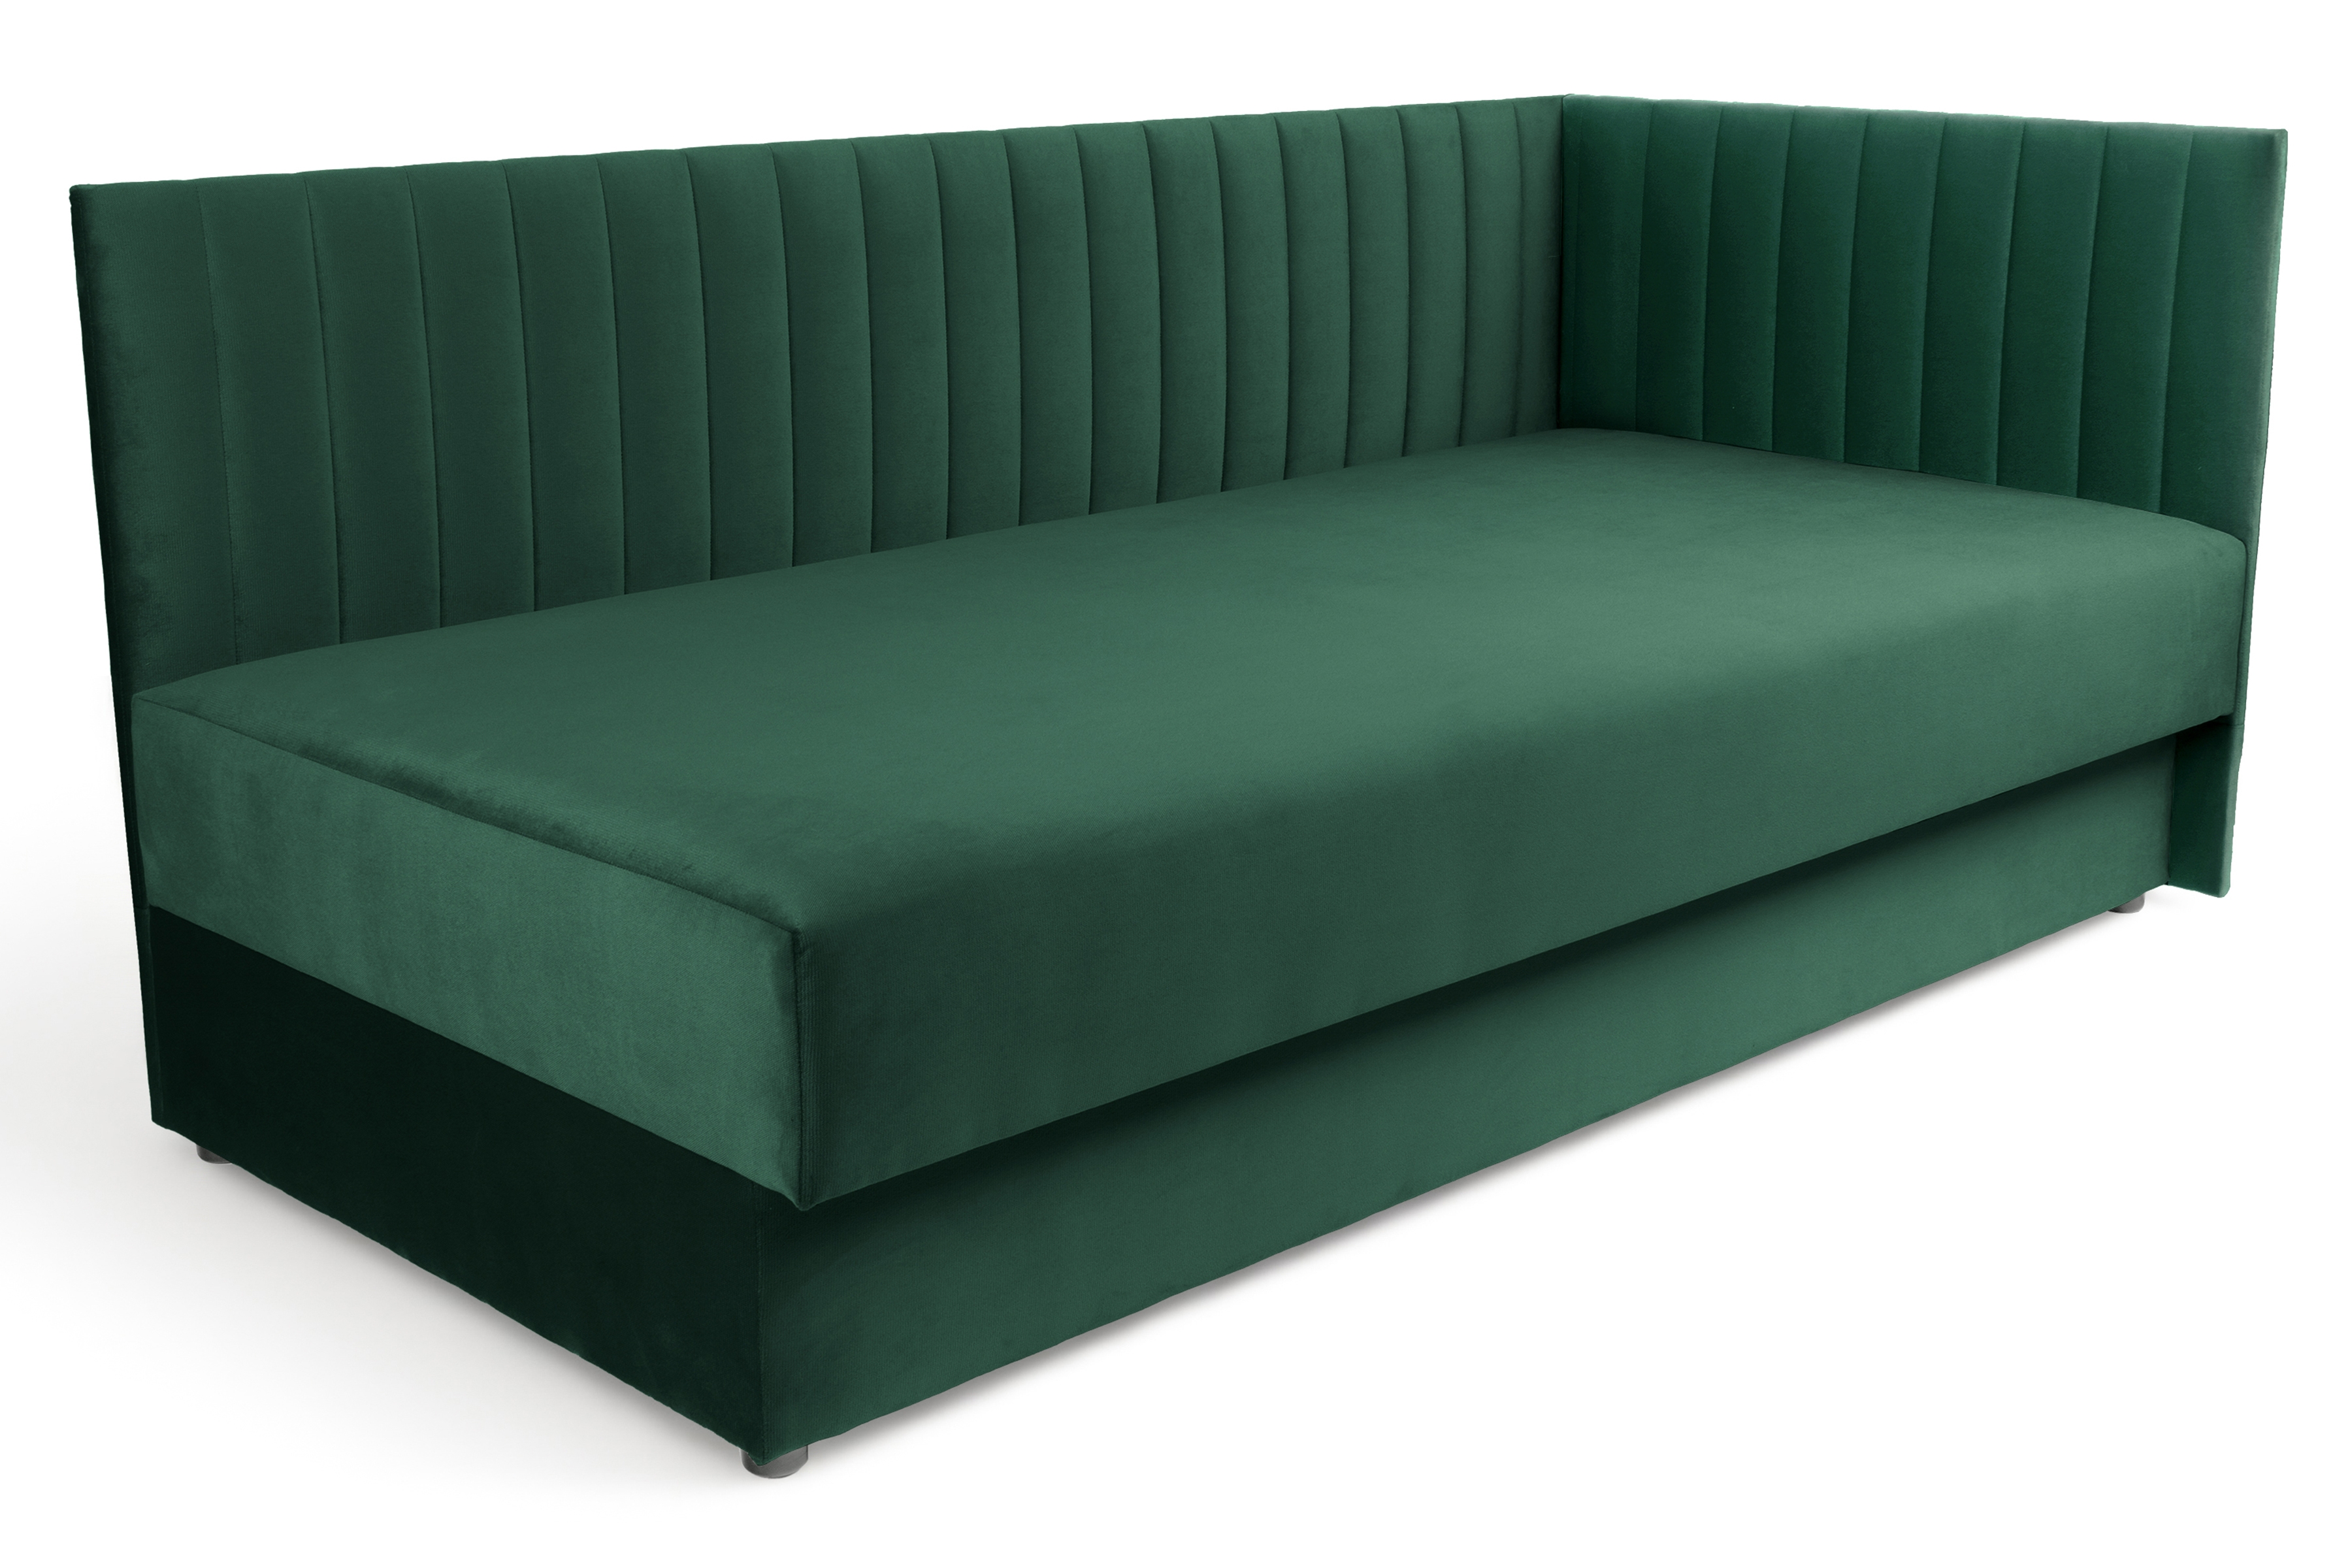 Tapczan/łóżko prawostronne z pojemnikiem Nutri - zielony welur Zanzibar 162, 186x80/100 cm Tapczan/łóżko prawostronne z pojemnikiem Nutri - zielony welur Zanzibar 162, 186x80/100 cm